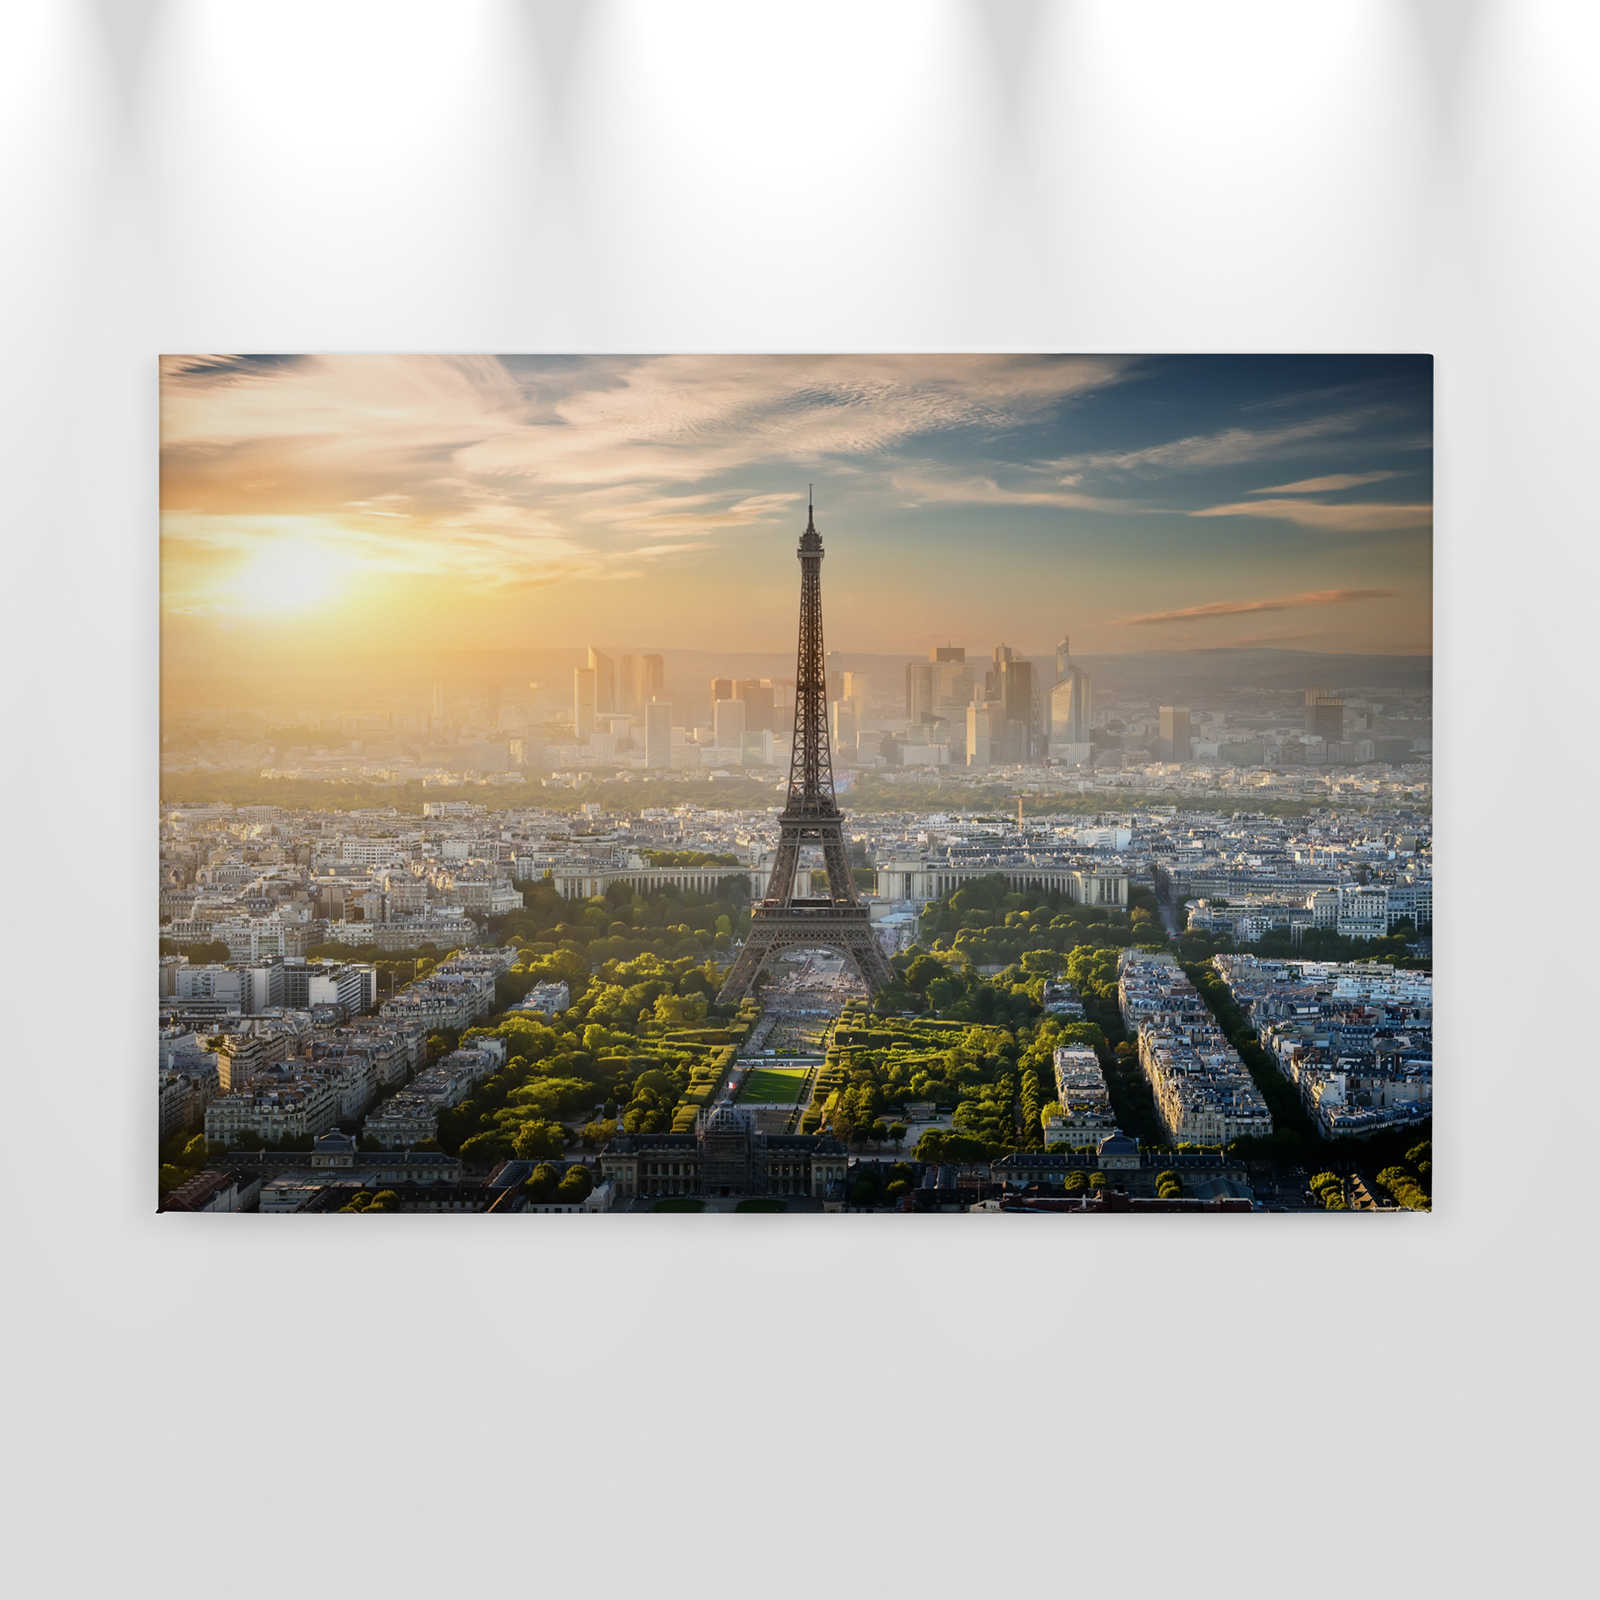             Canvas Eifeltoren Parijs - 0.90 m x 0.60 m
        